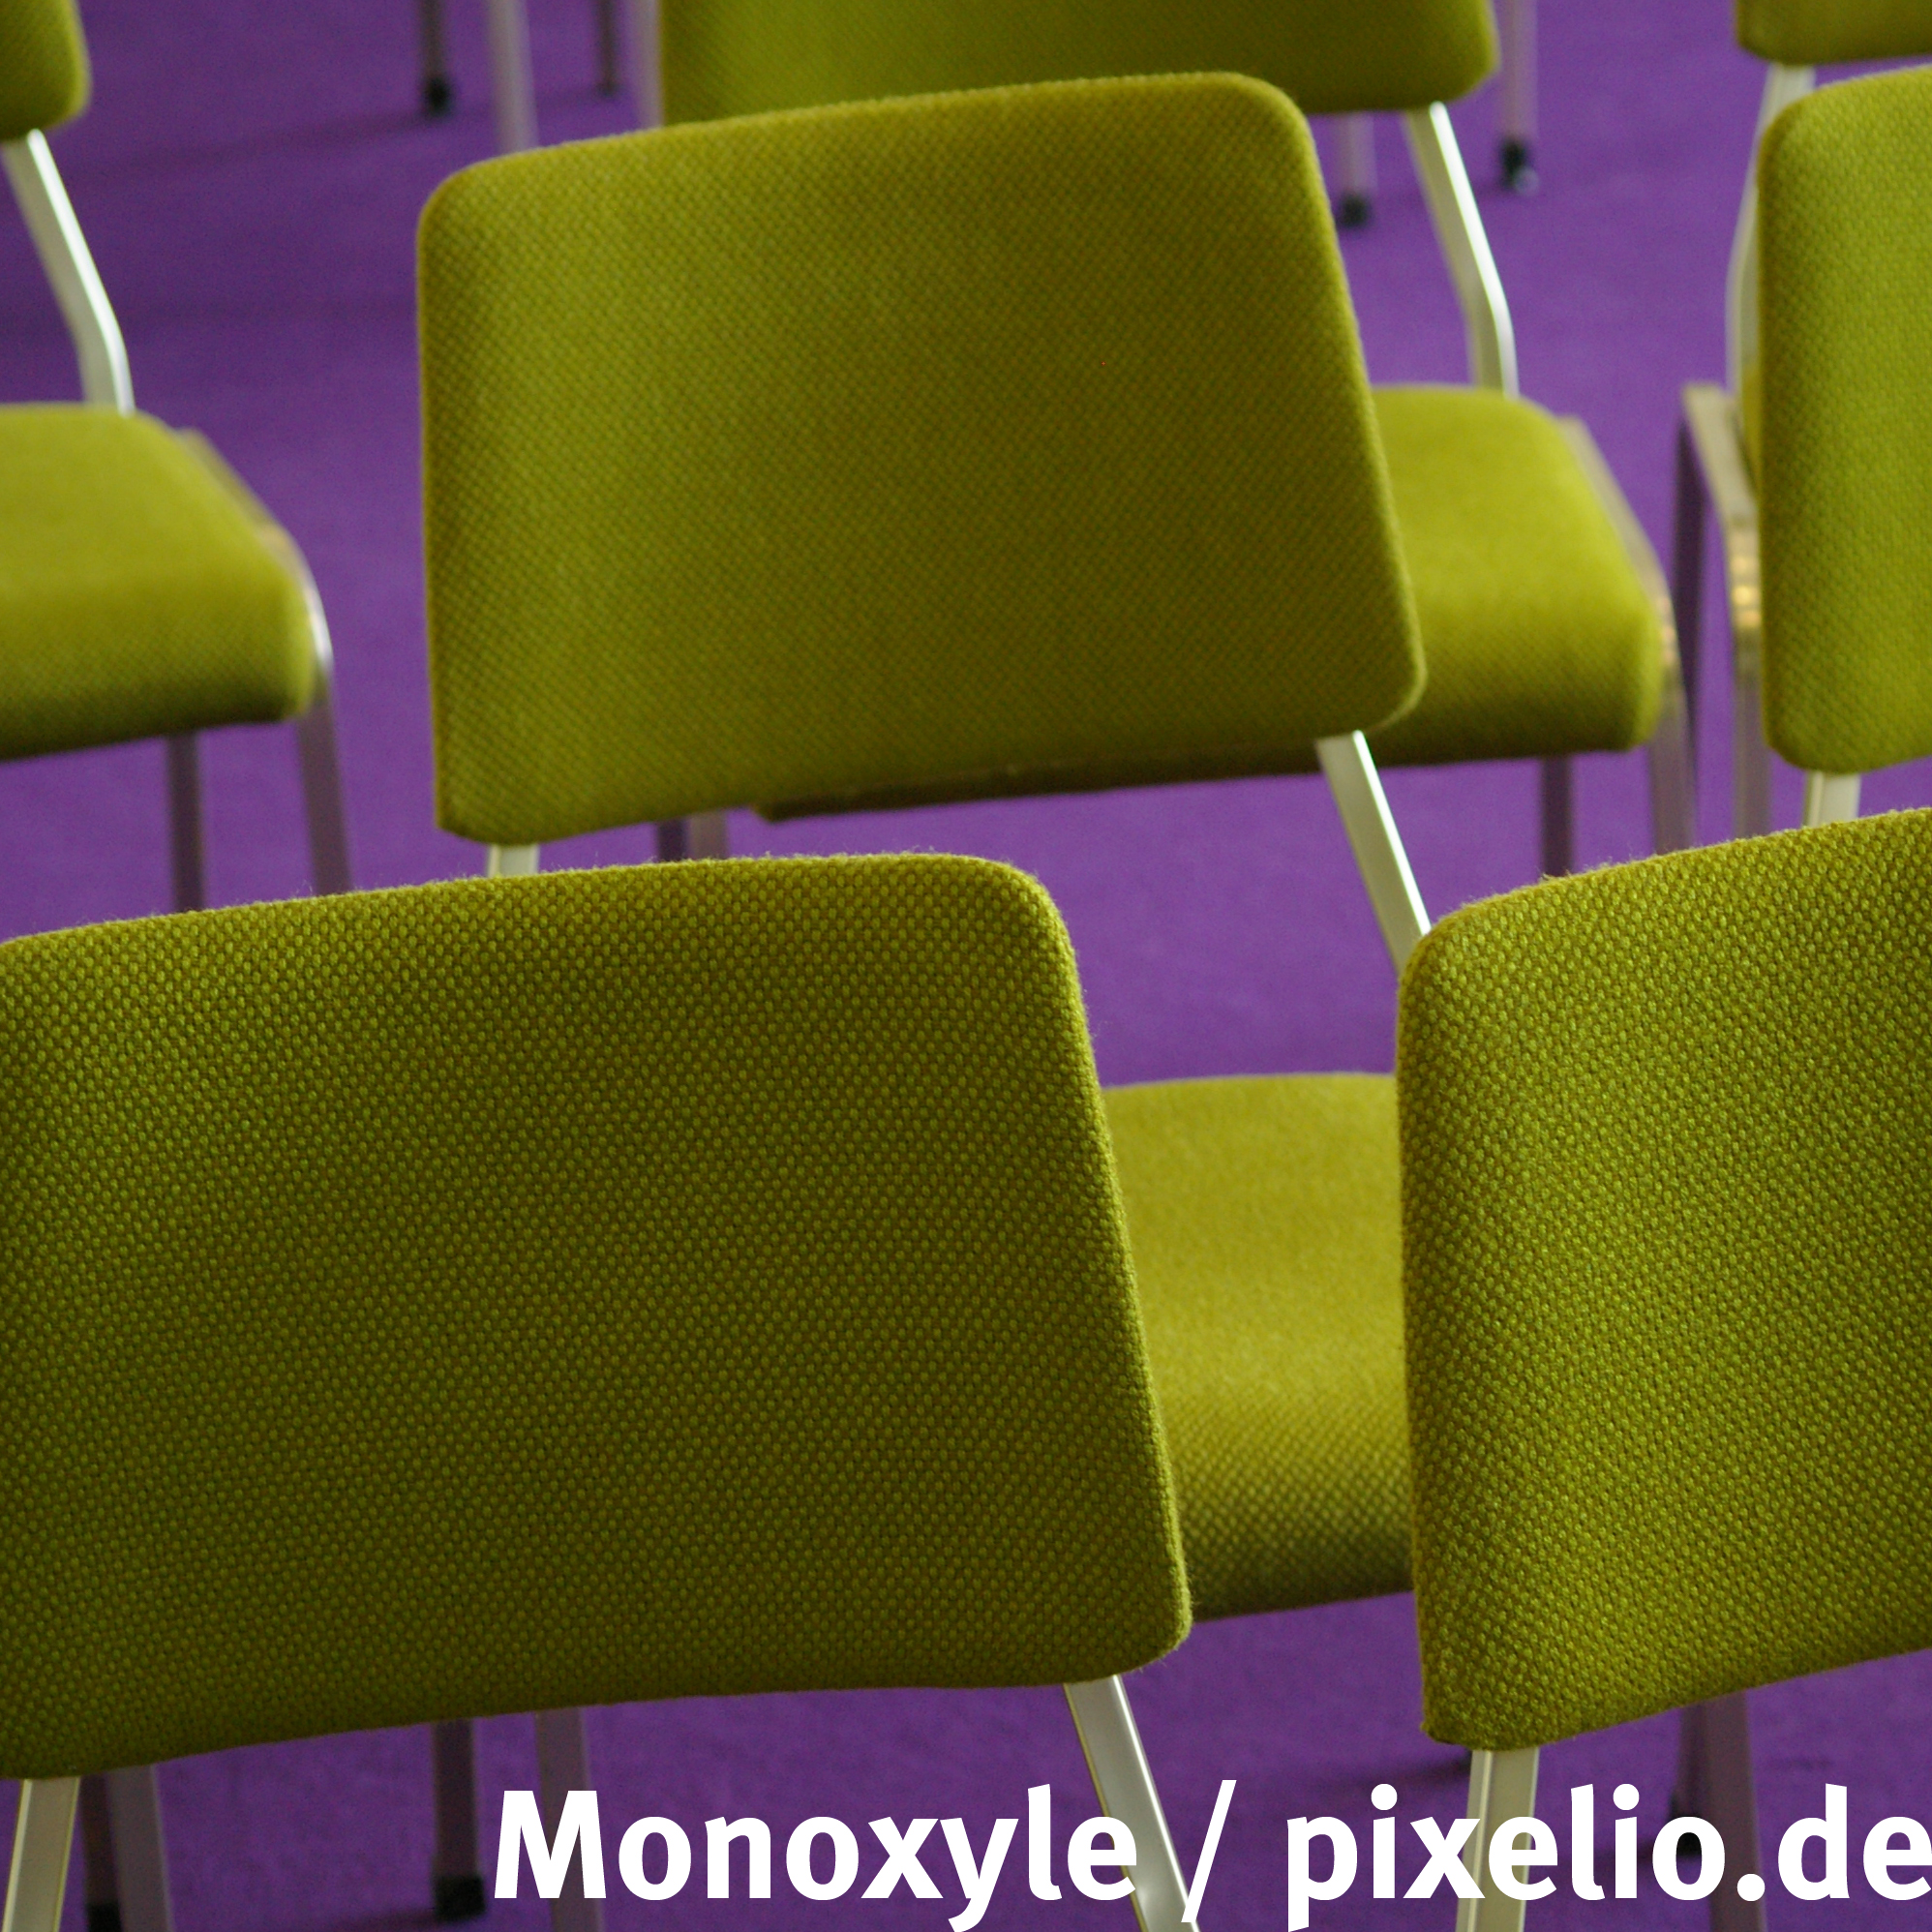 Veranstaltung Stuehle Monoxyle Pixelio 1 1